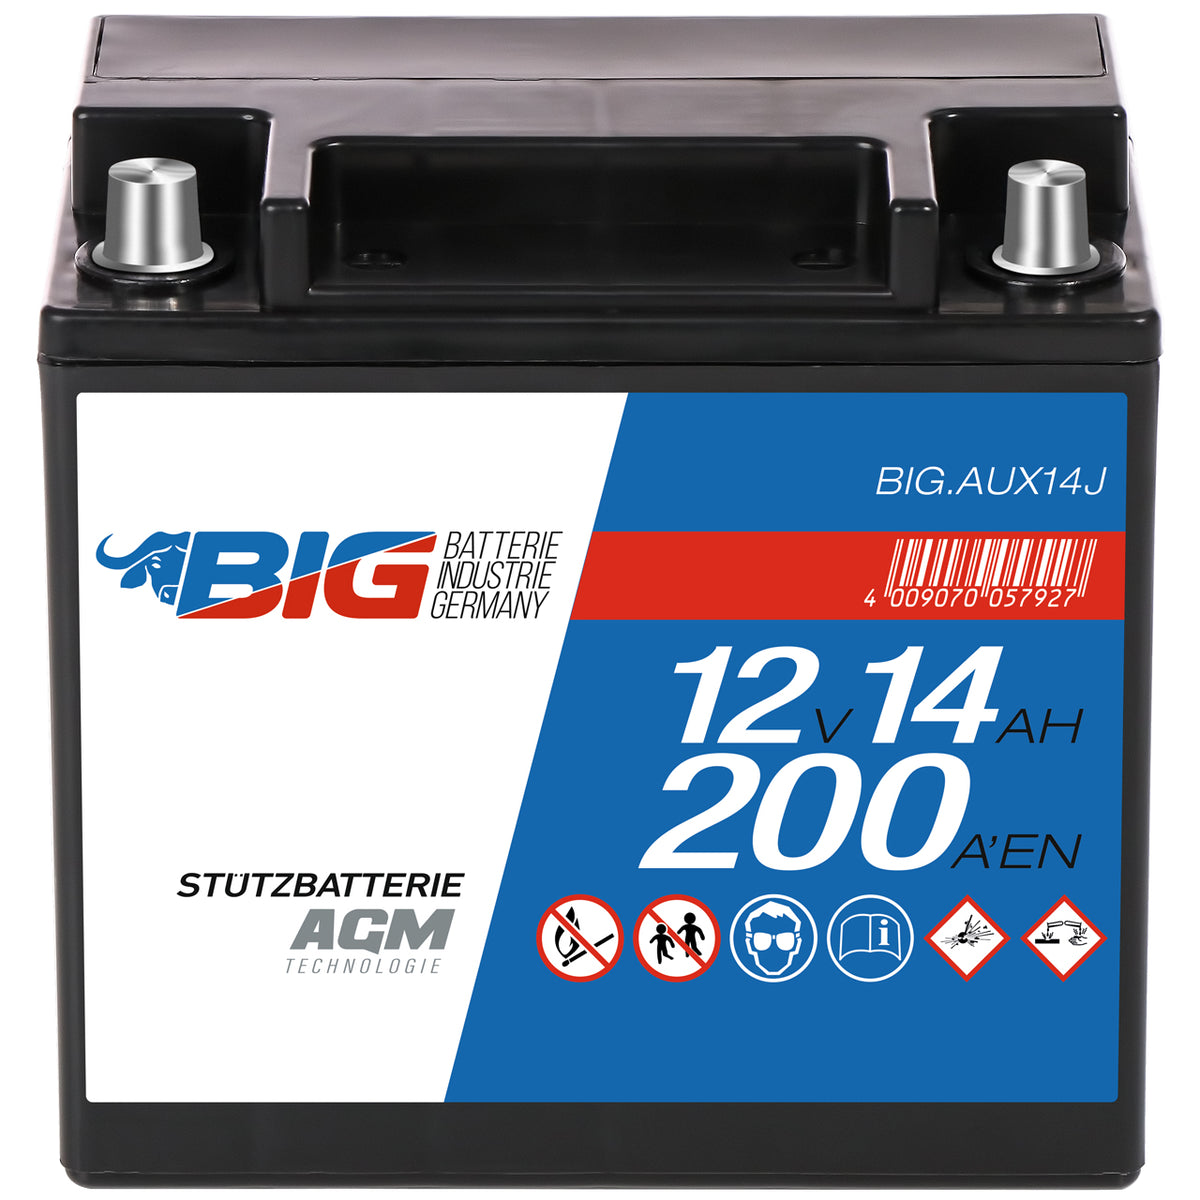 BIG AUX14-J Premium Stützbatterie AGM 12V 14Ah 200A/EN